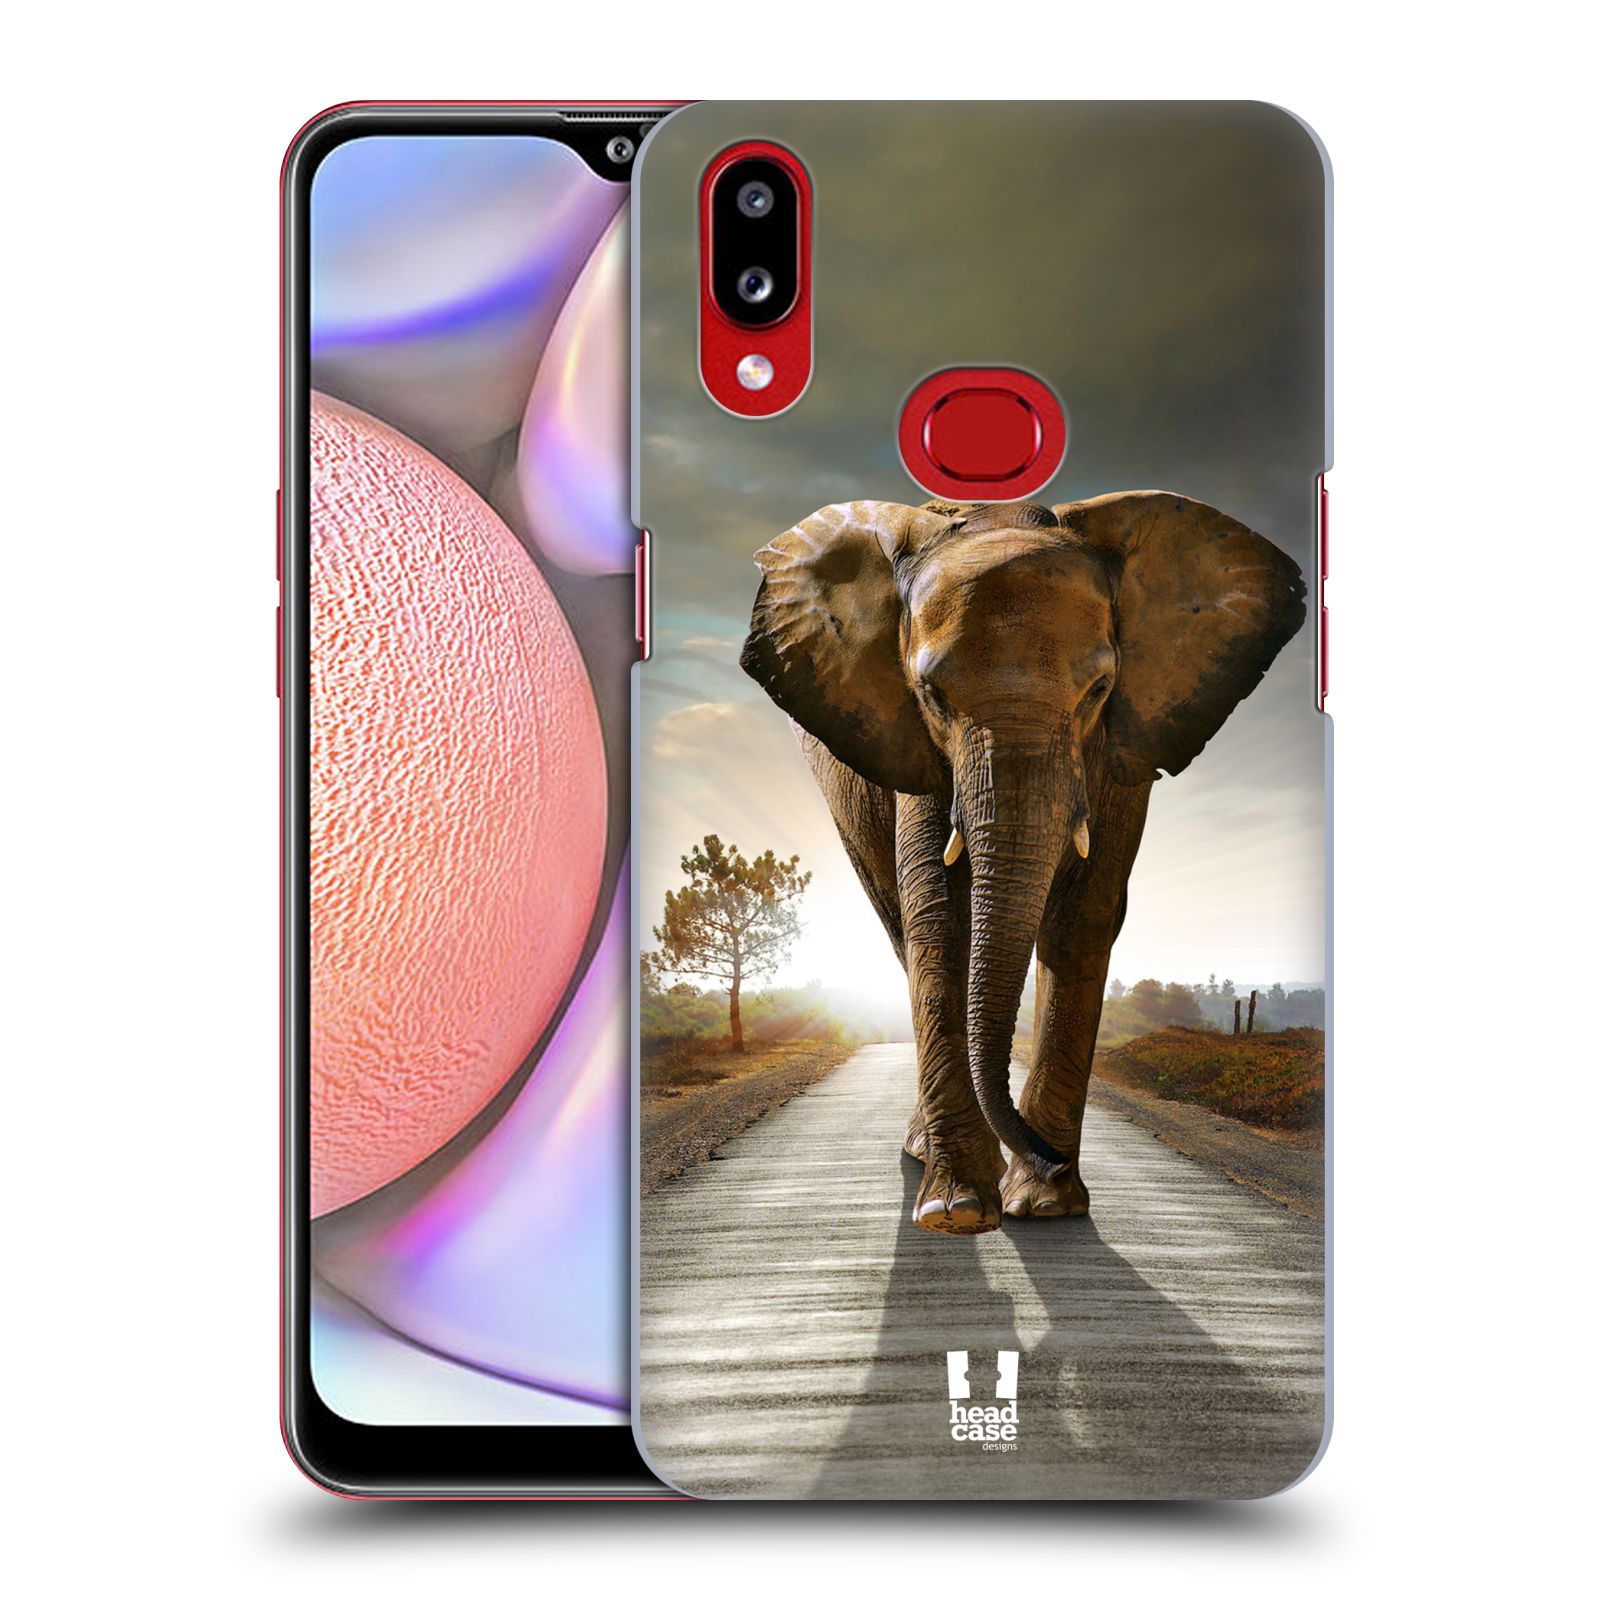 Zadní obal pro mobil Samsung Galaxy A10s - HEAD CASE - Svět zvířat kráčející slon